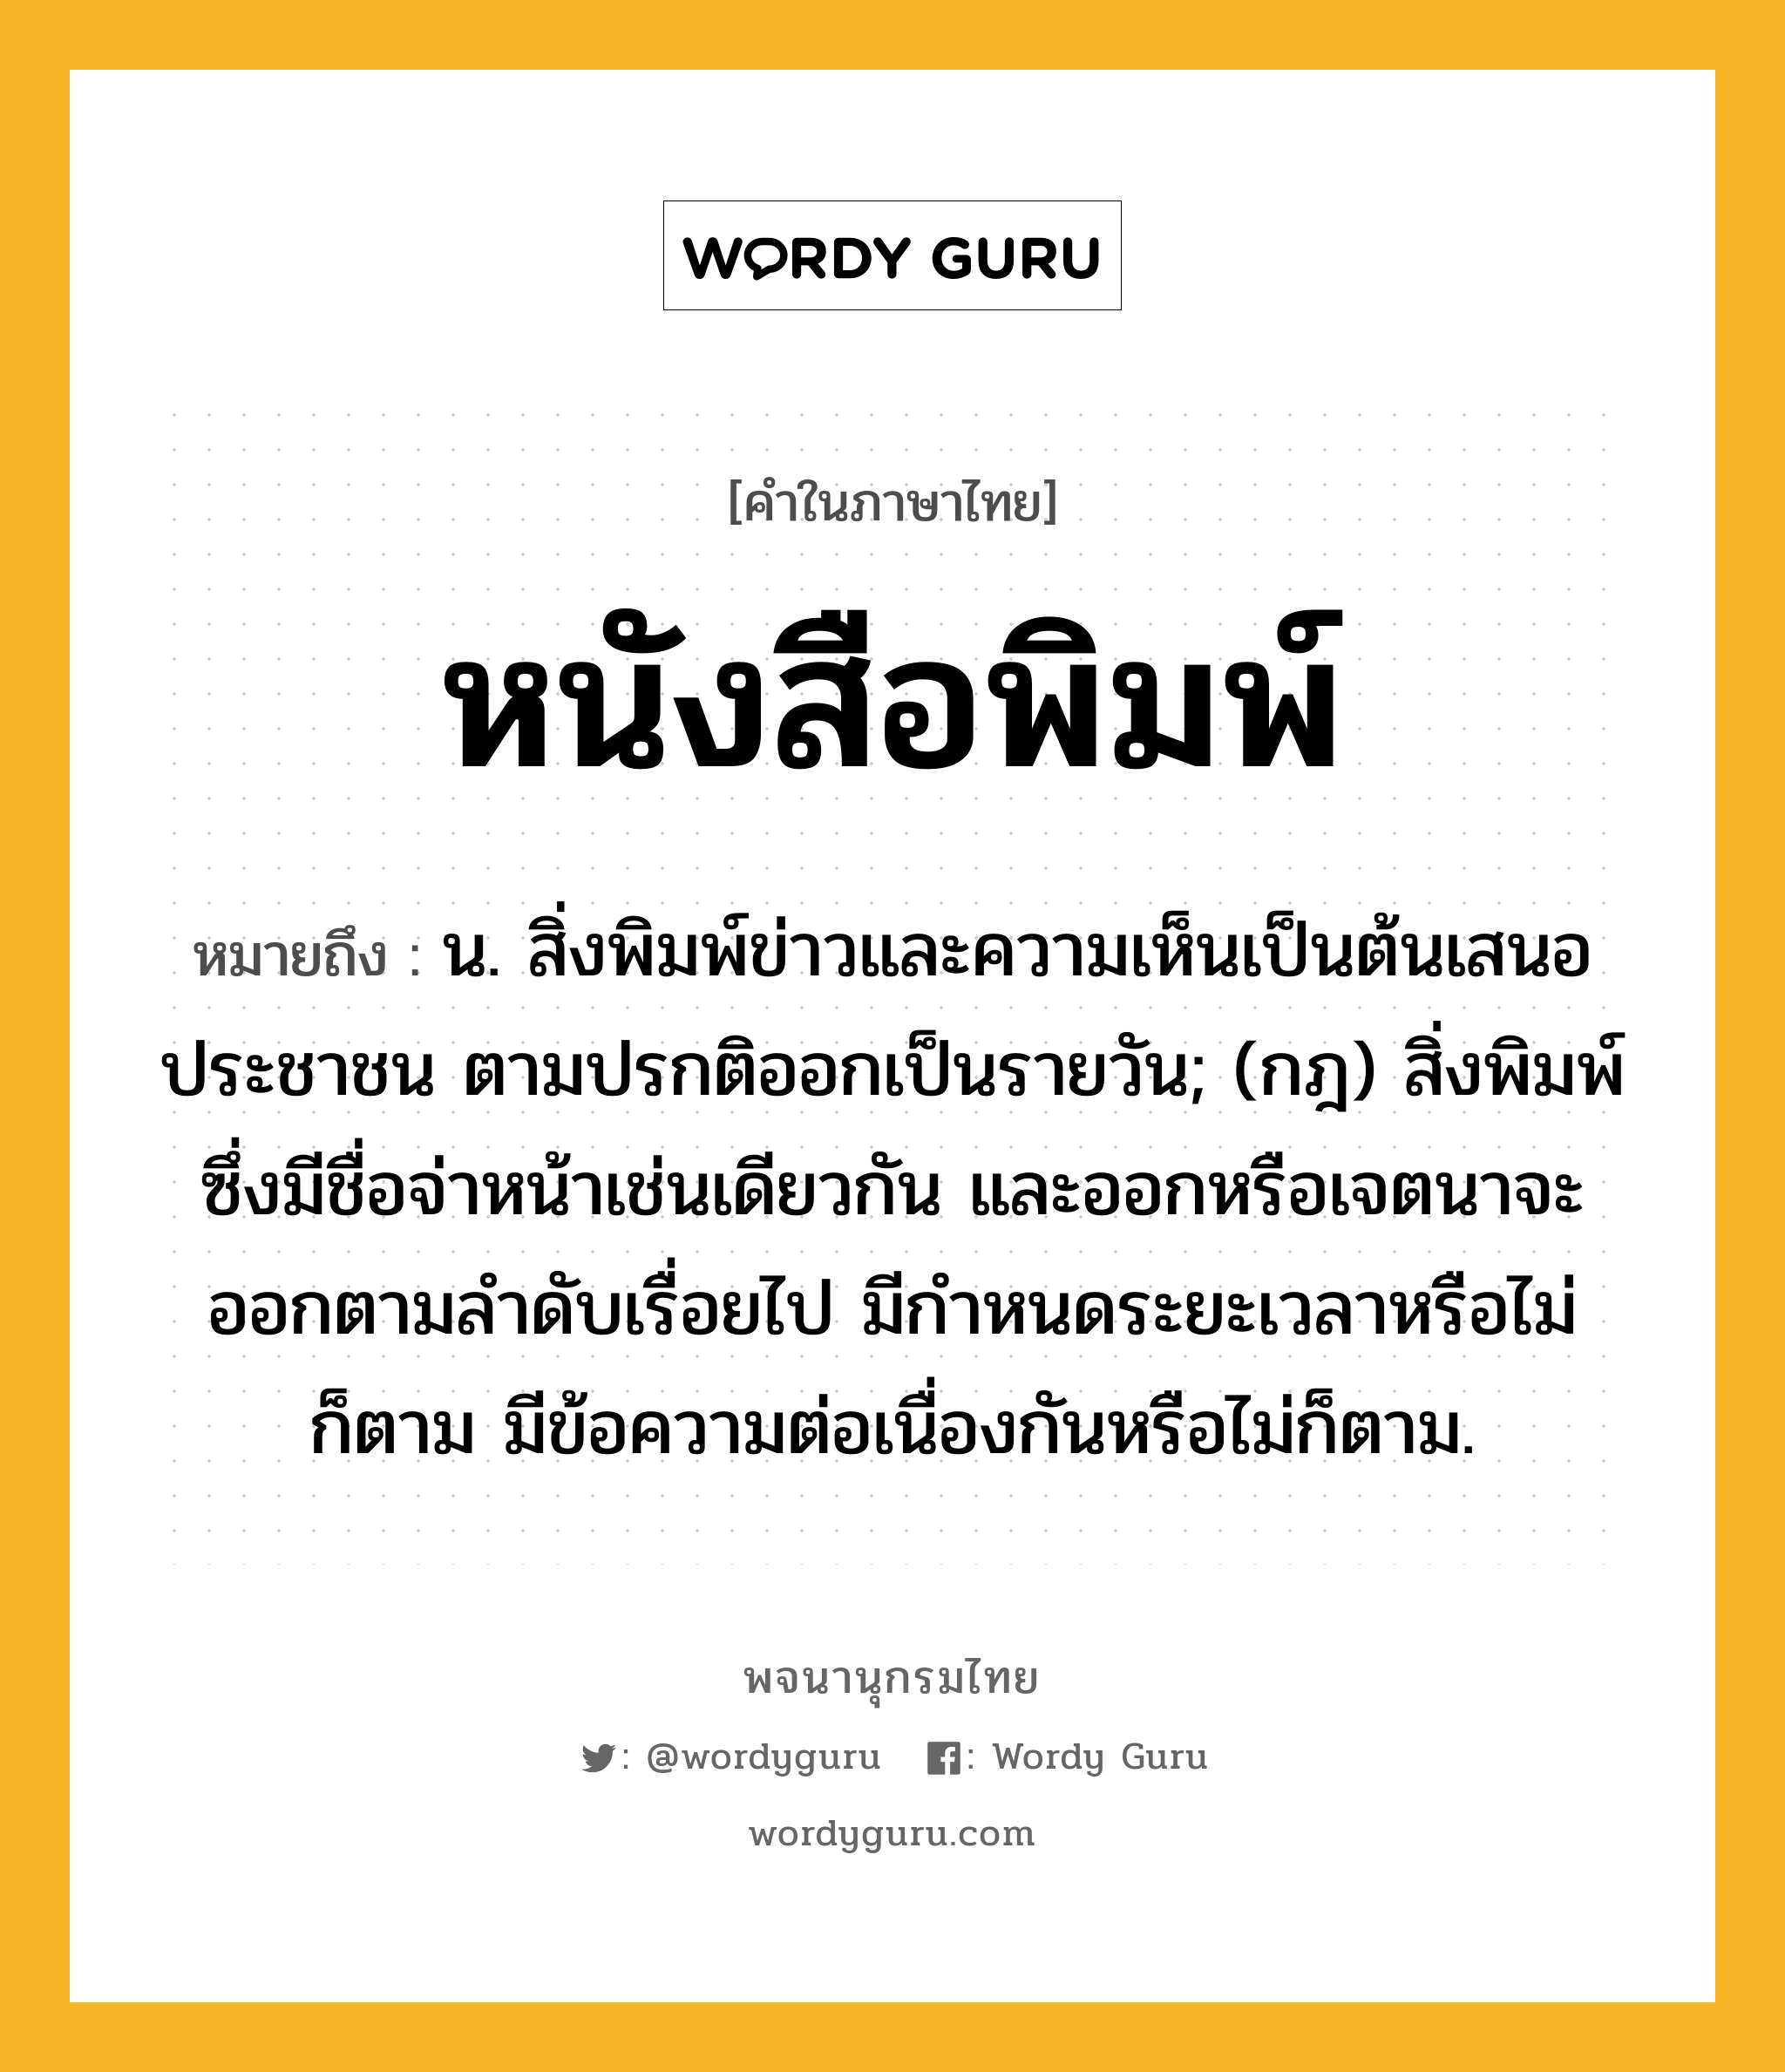 หนังสือพิมพ์ ความหมาย หมายถึงอะไร?, คำในภาษาไทย หนังสือพิมพ์ หมายถึง น. สิ่งพิมพ์ข่าวและความเห็นเป็นต้นเสนอประชาชน ตามปรกติออกเป็นรายวัน; (กฎ) สิ่งพิมพ์ซึ่งมีชื่อจ่าหน้าเช่นเดียวกัน และออกหรือเจตนาจะออกตามลําดับเรื่อยไป มีกําหนดระยะเวลาหรือไม่ก็ตาม มีข้อความต่อเนื่องกันหรือไม่ก็ตาม.